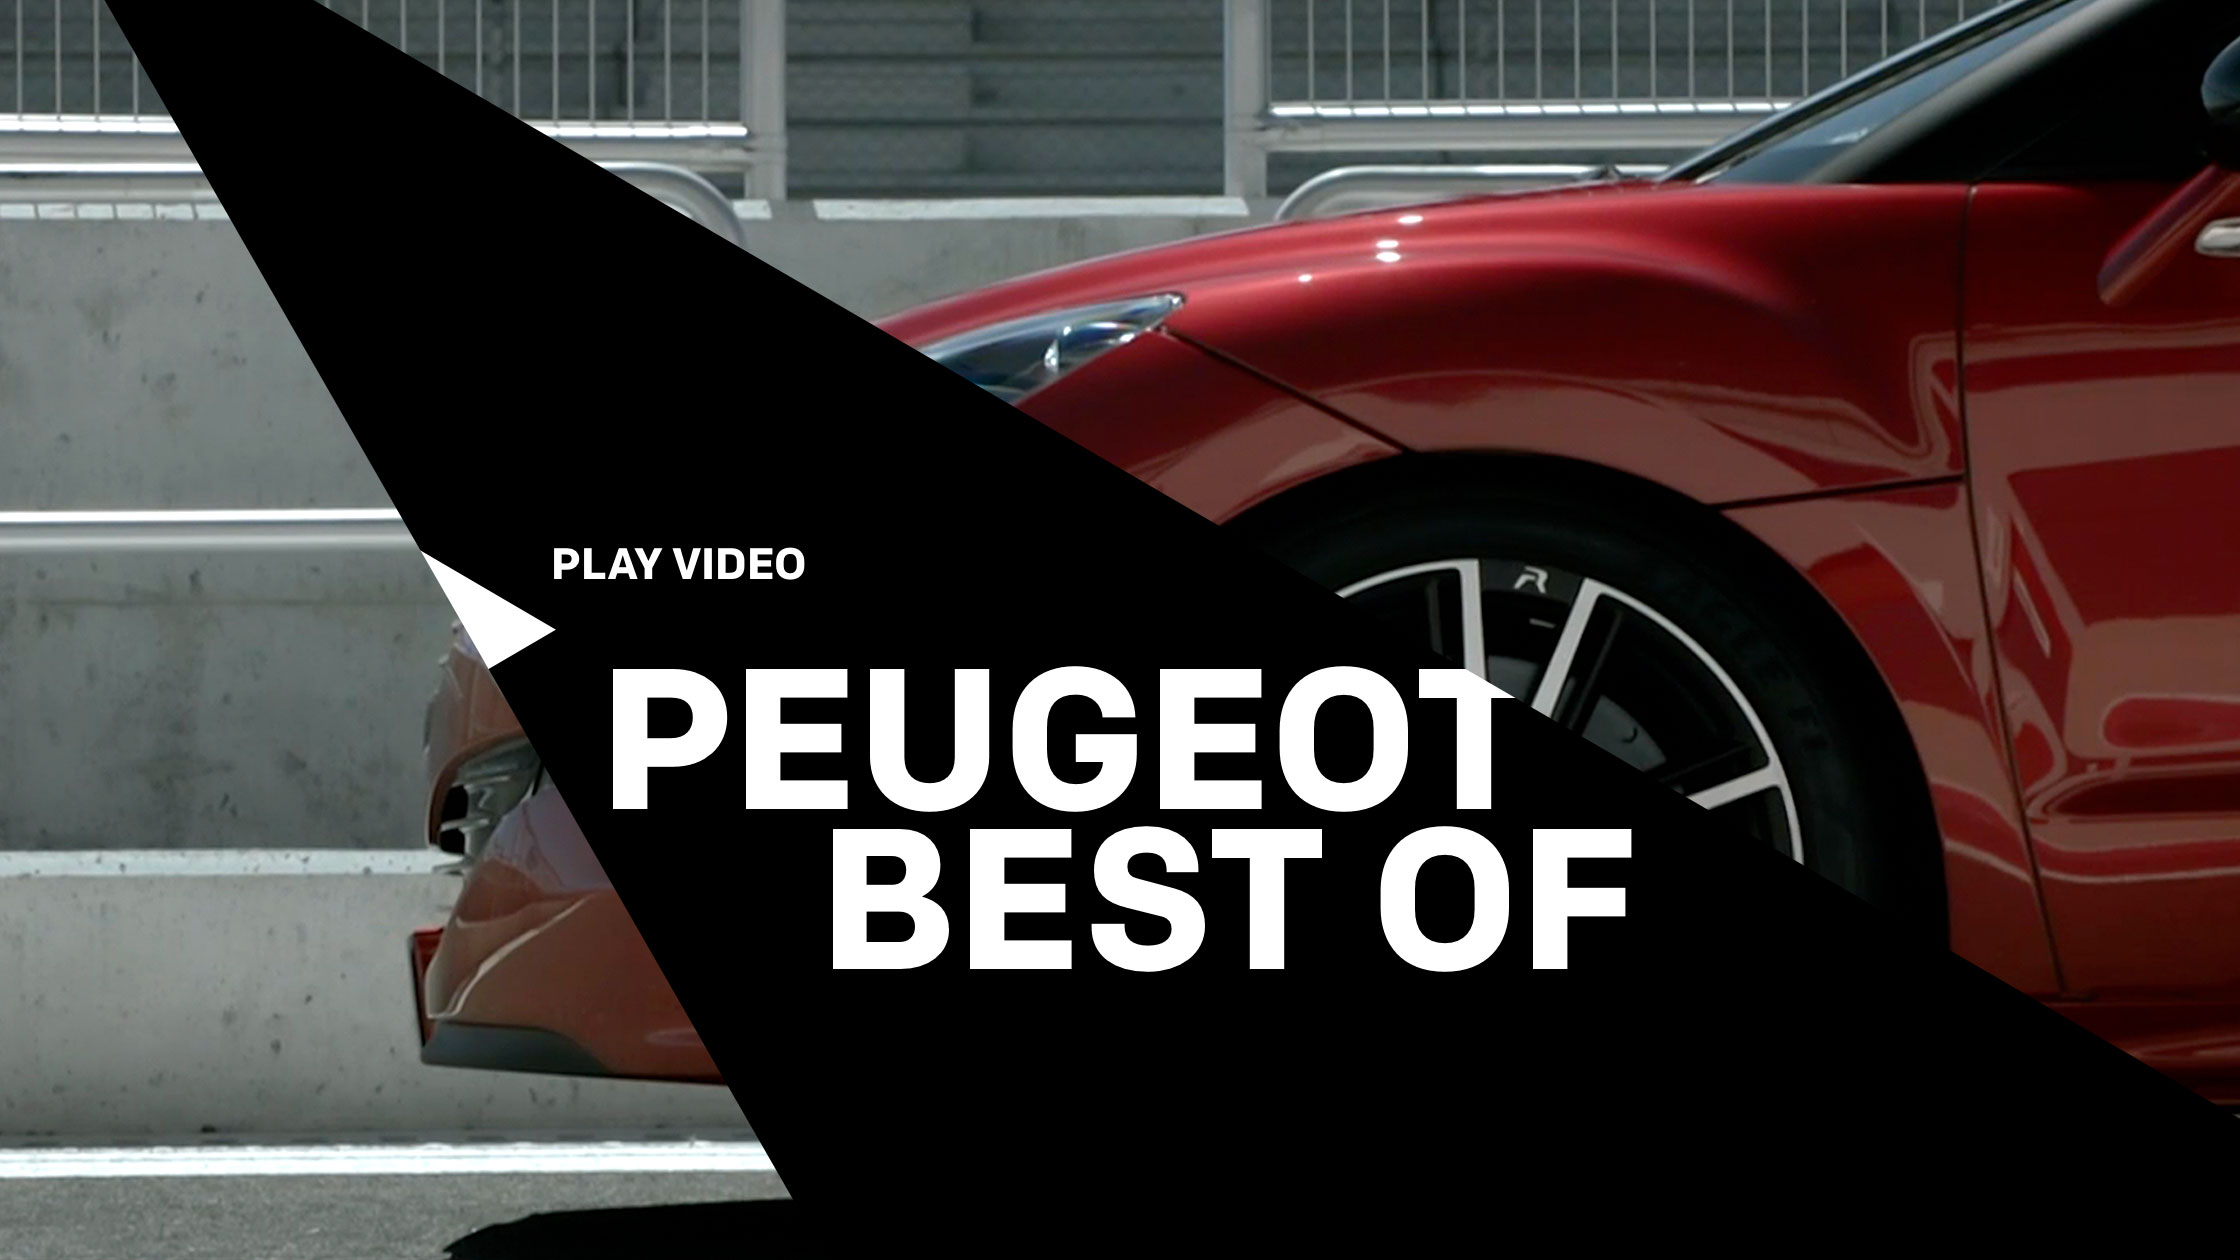 2014 ist bei Peugeot viel passiert! Grund genug einen Blick zurück zu werfen und sich bei allen zu bedanken, die das möglich gemacht haben.